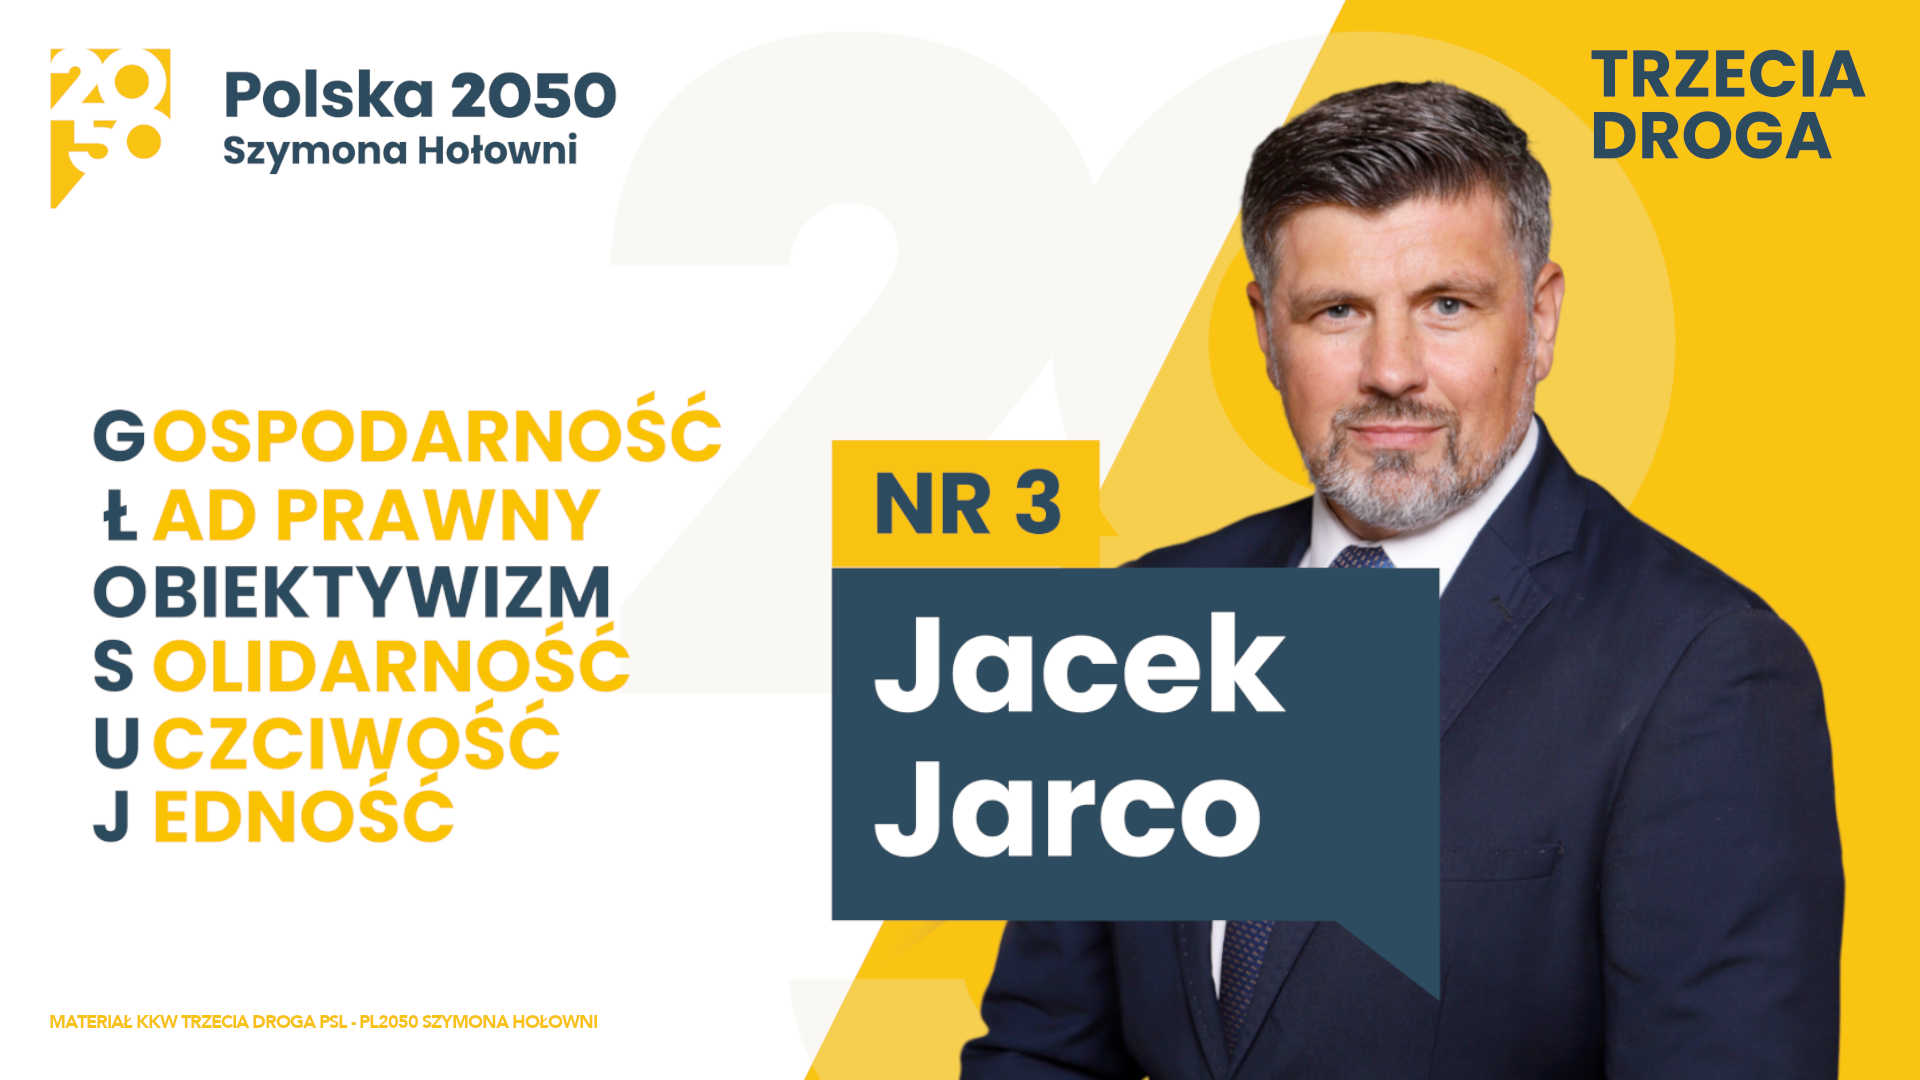 Jacek Jarco - Obiektywizm